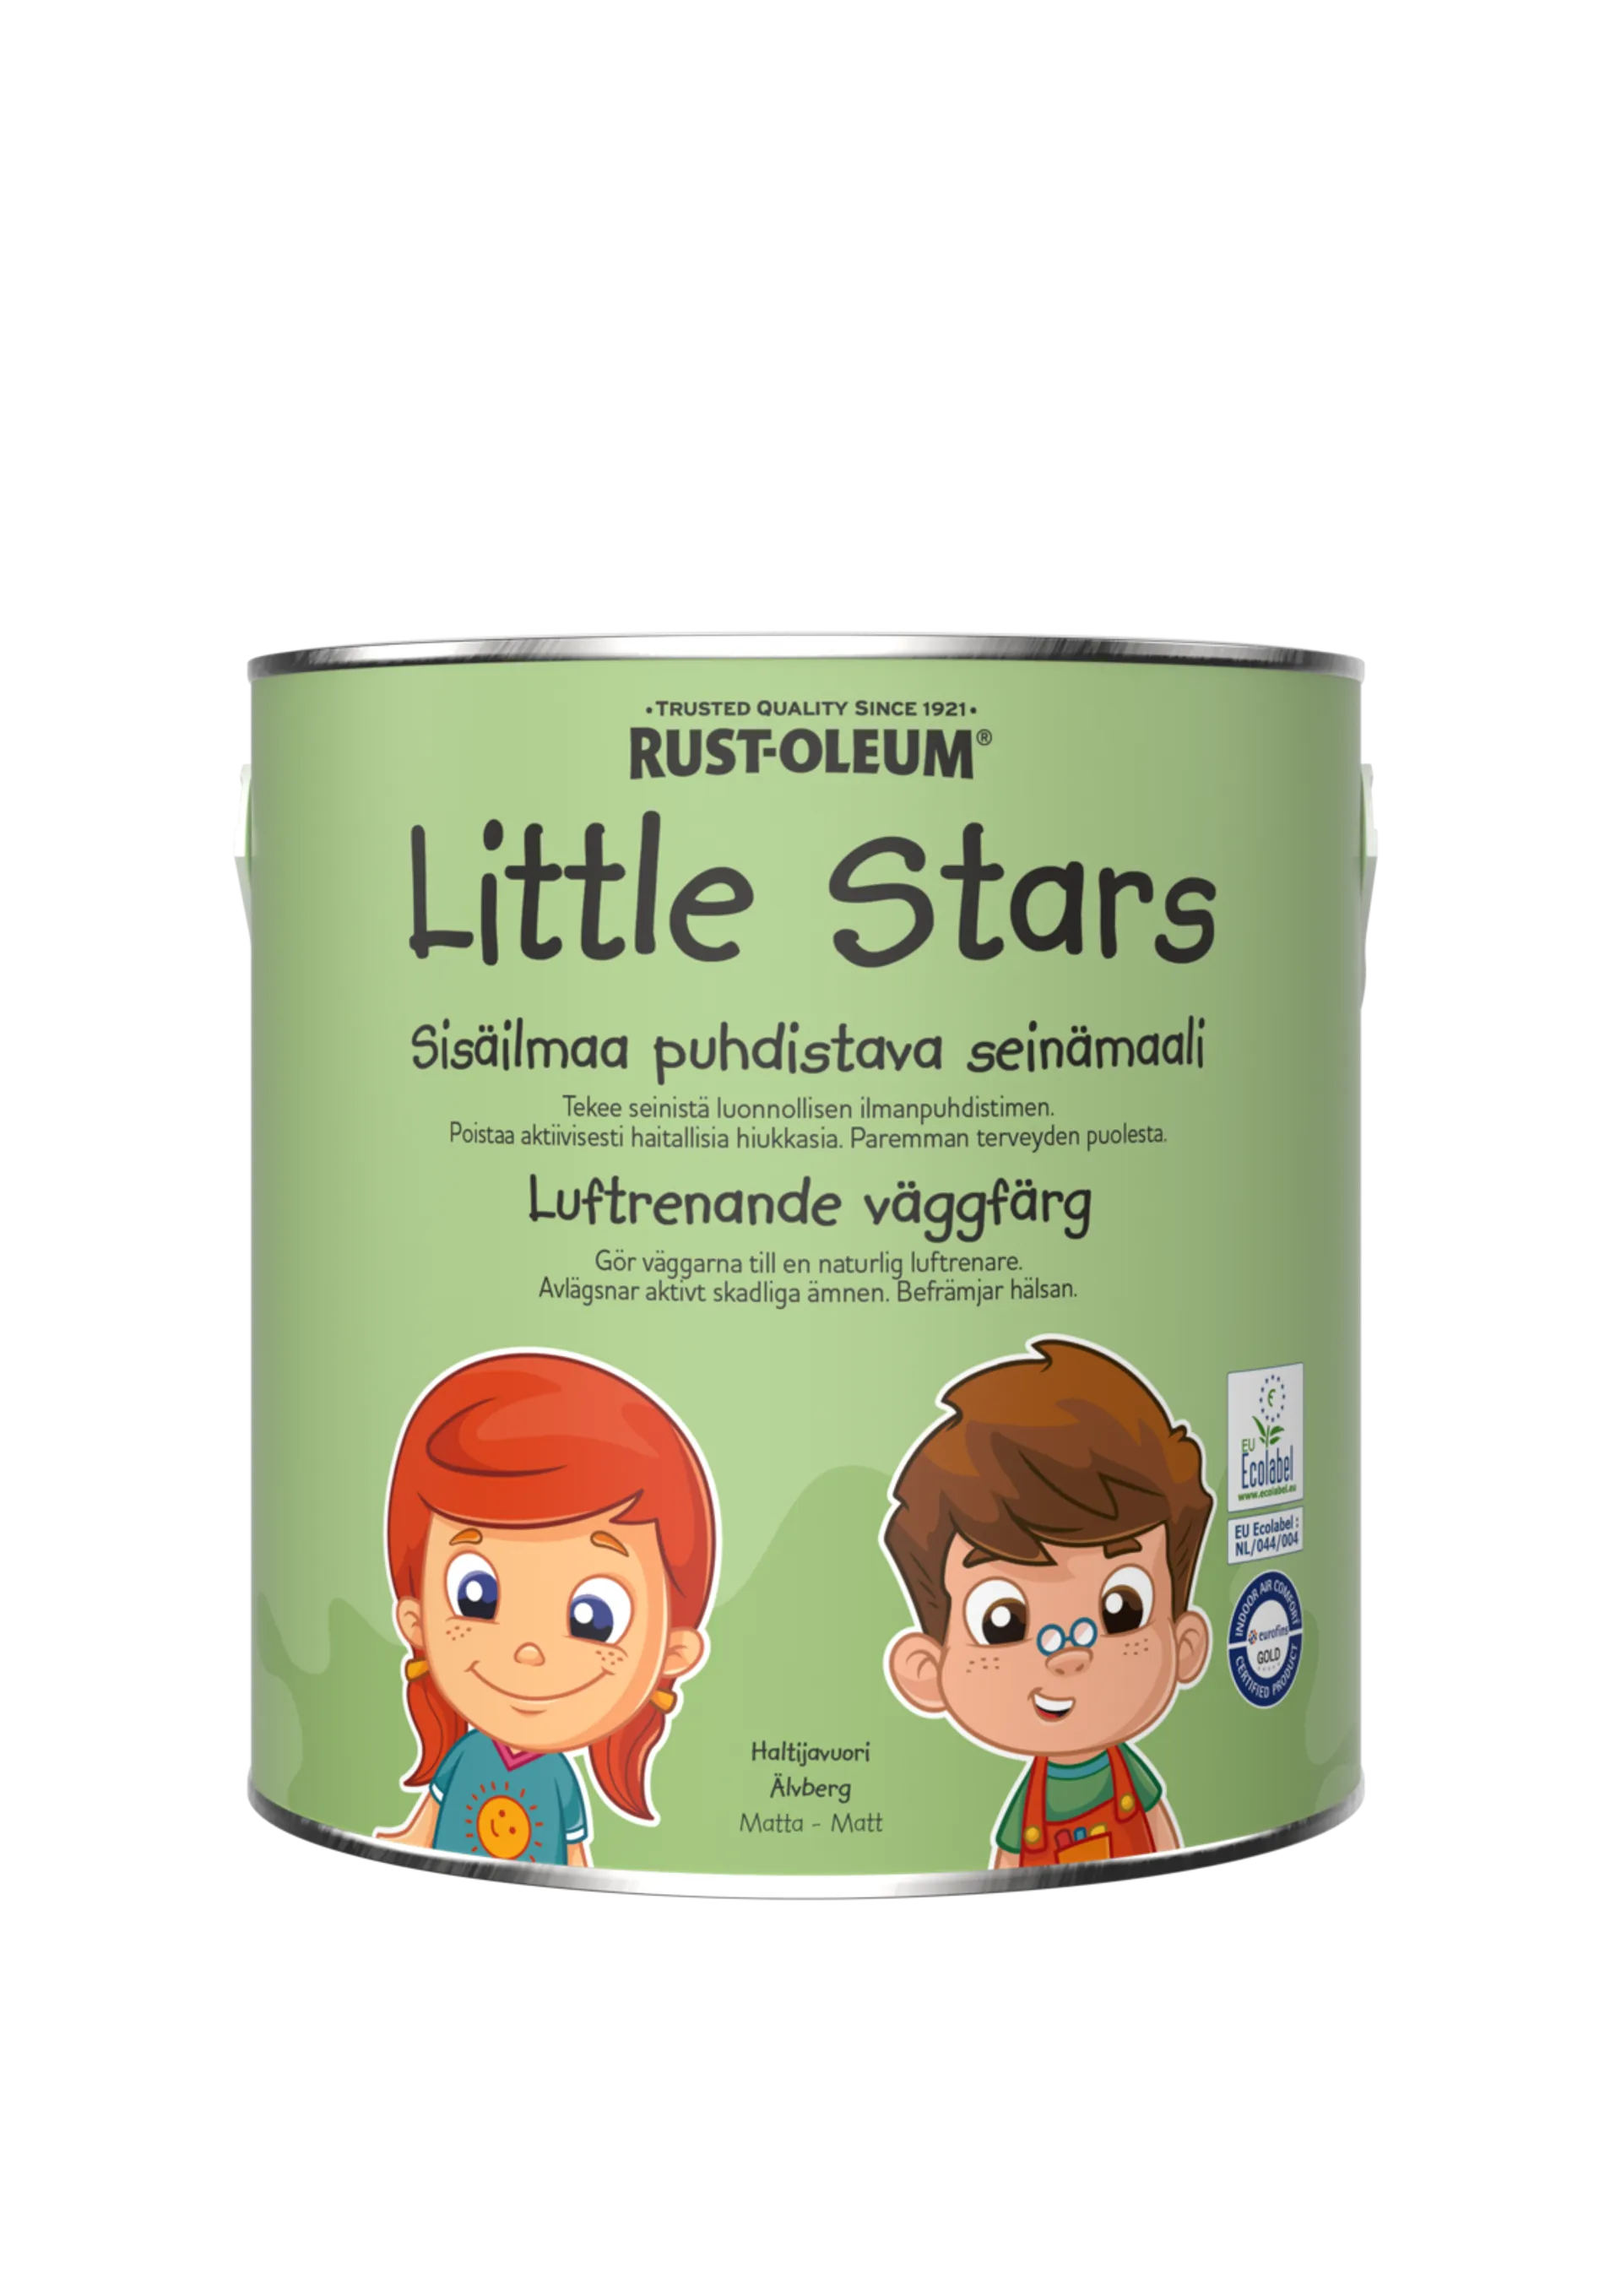 Rust-Oleum Little Stars Sisäilmaa puhdistava Seinämaali 2,5L Haltijavuori